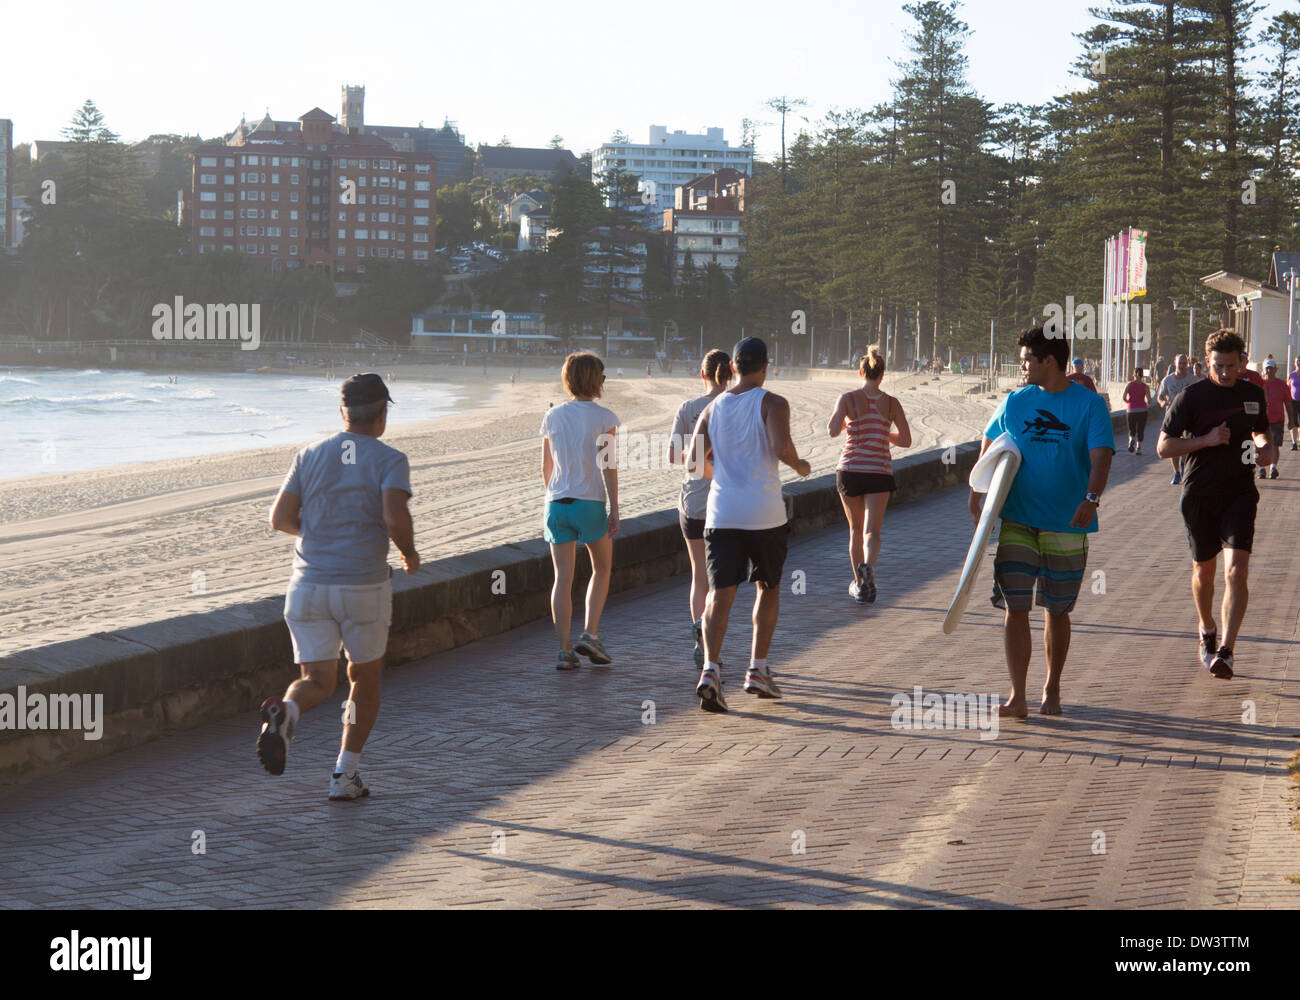 Les marcheurs et coureurs de vitesse joggers surfeur sur promenade de Manly Beach Sydney NSW Australie Nouvelle Galles du Sud Banque D'Images